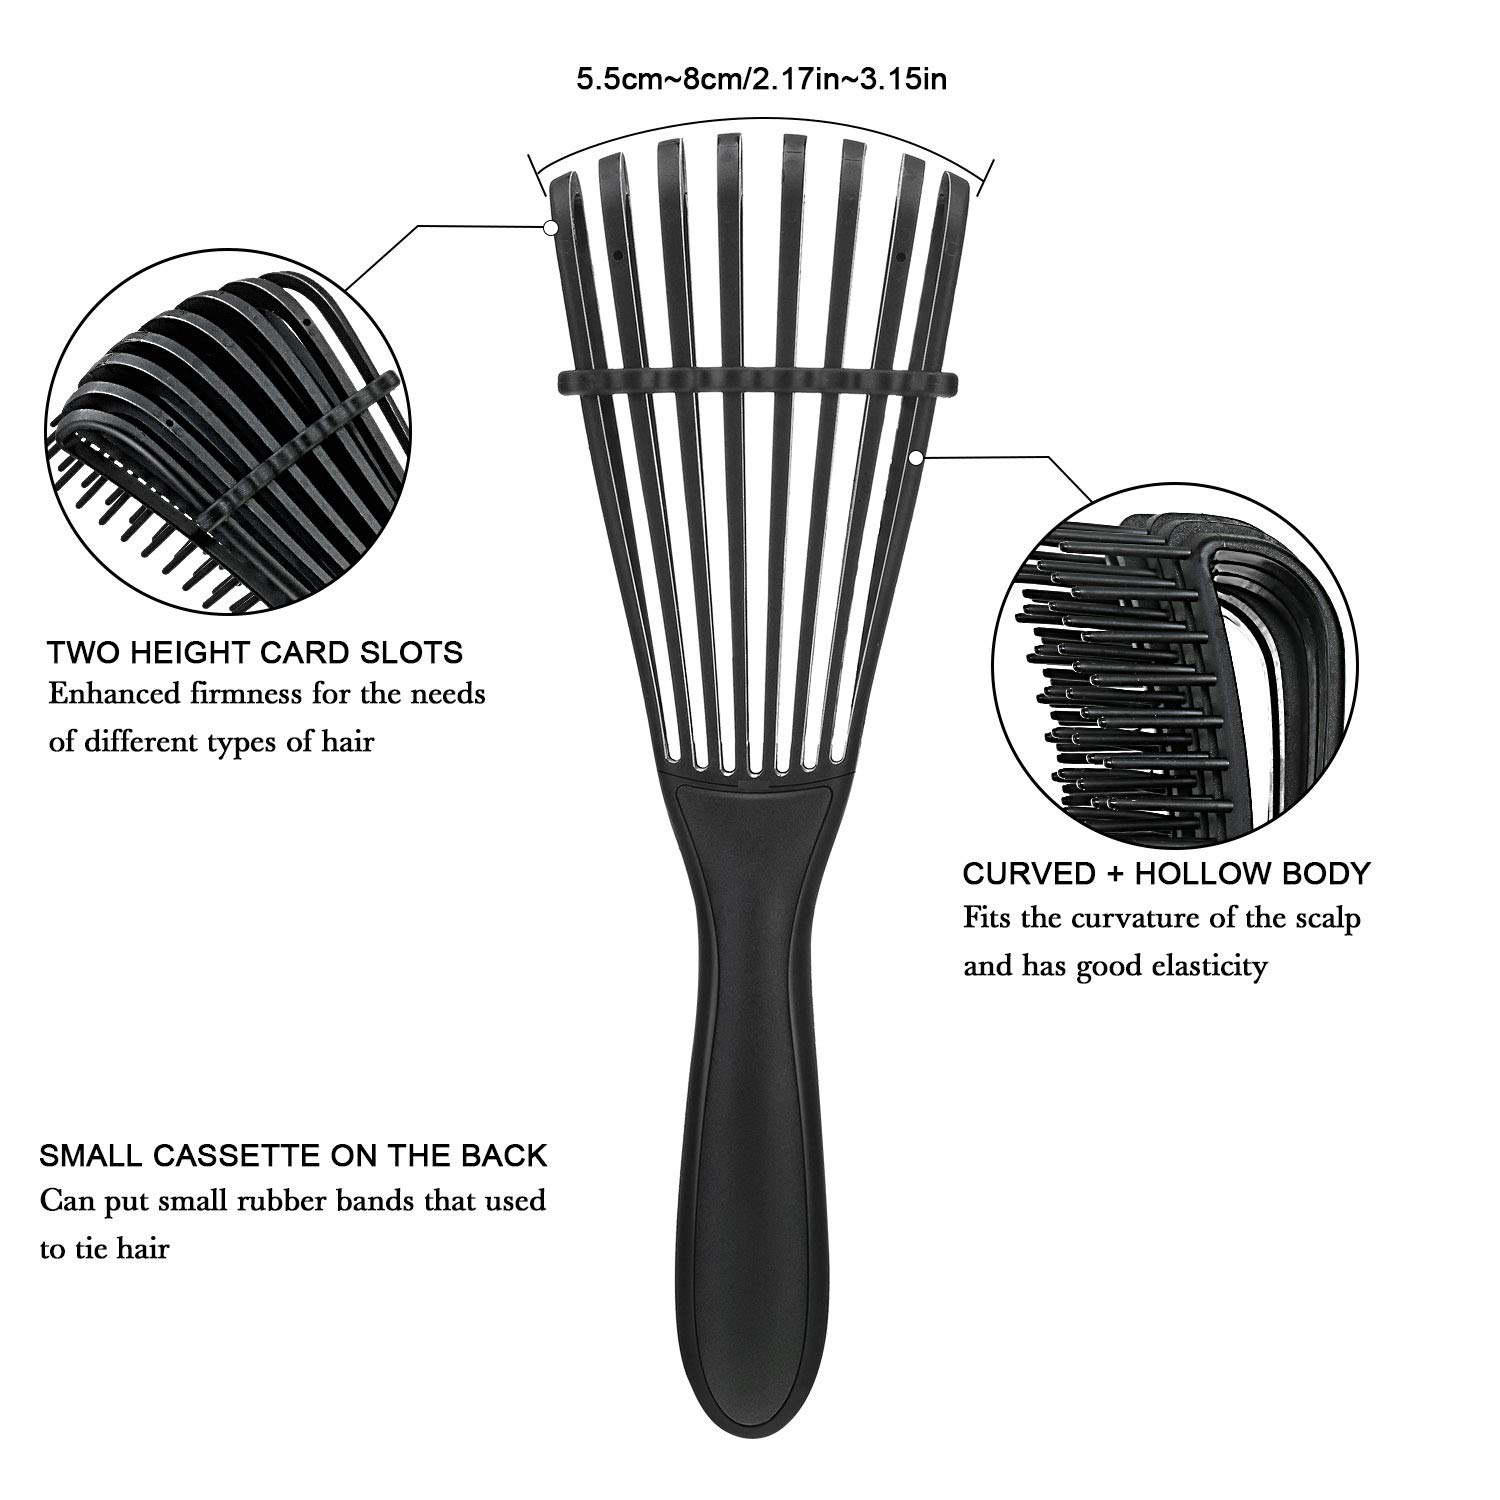 Detangling Brush for Natural Hair - Wet or Dry